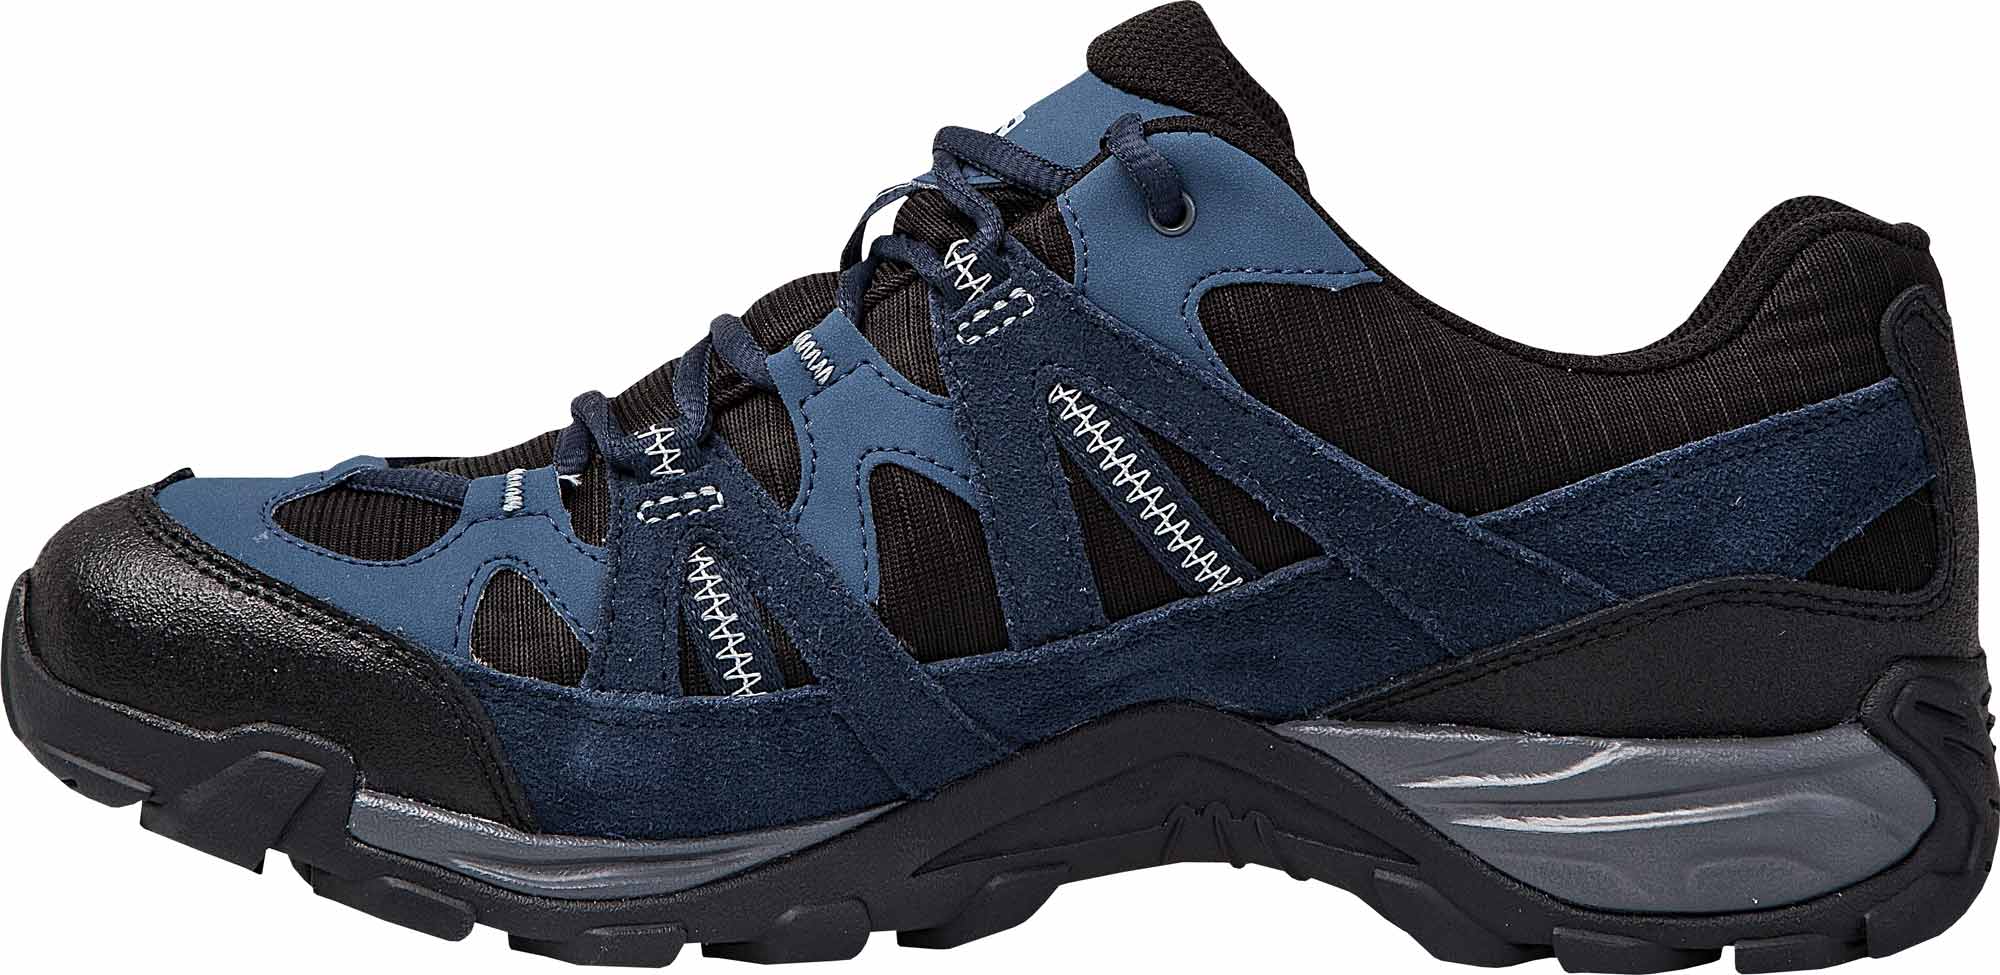 Men’s trekking shoes